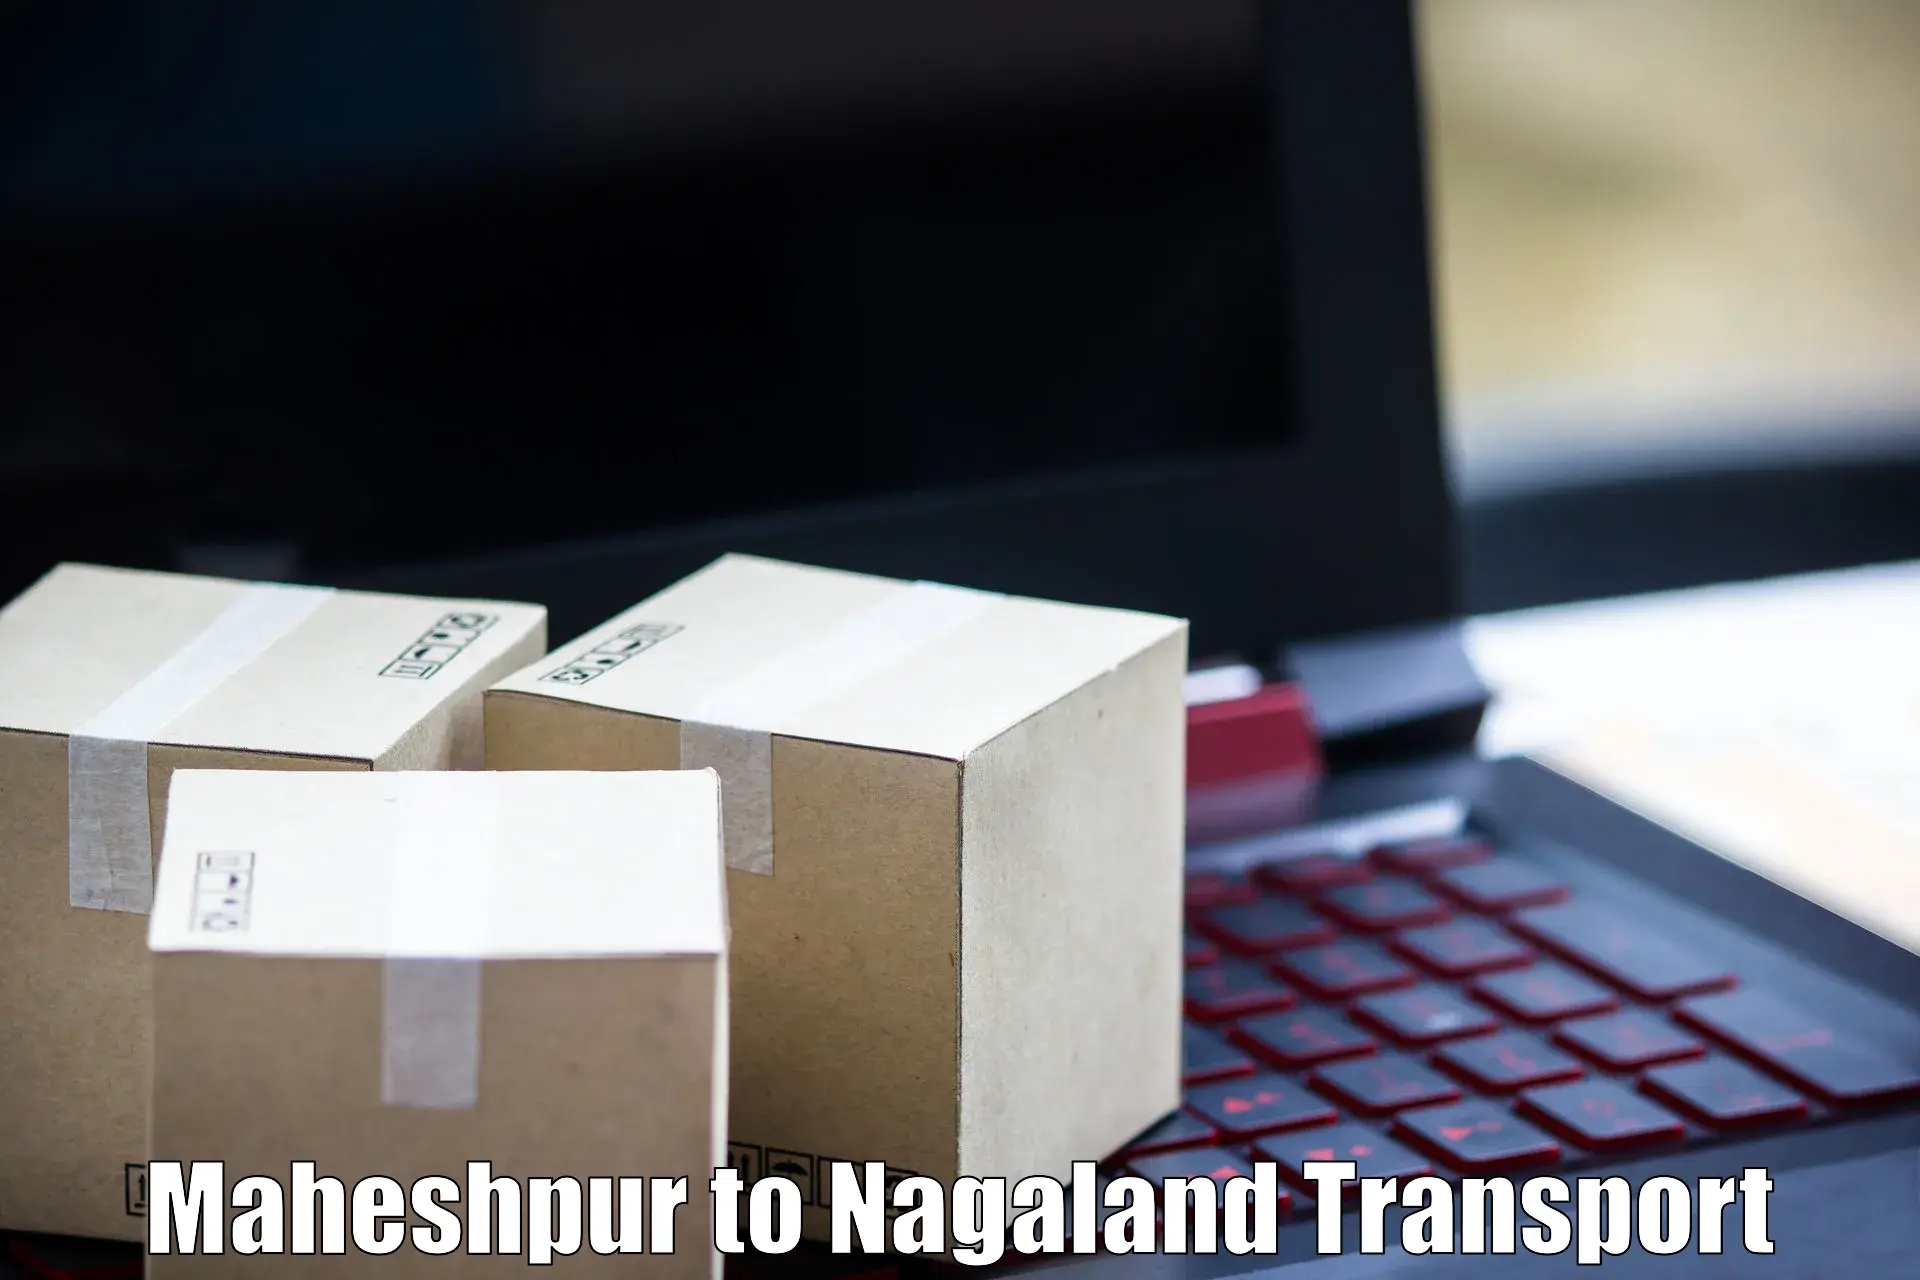 Delivery service Maheshpur to Nagaland